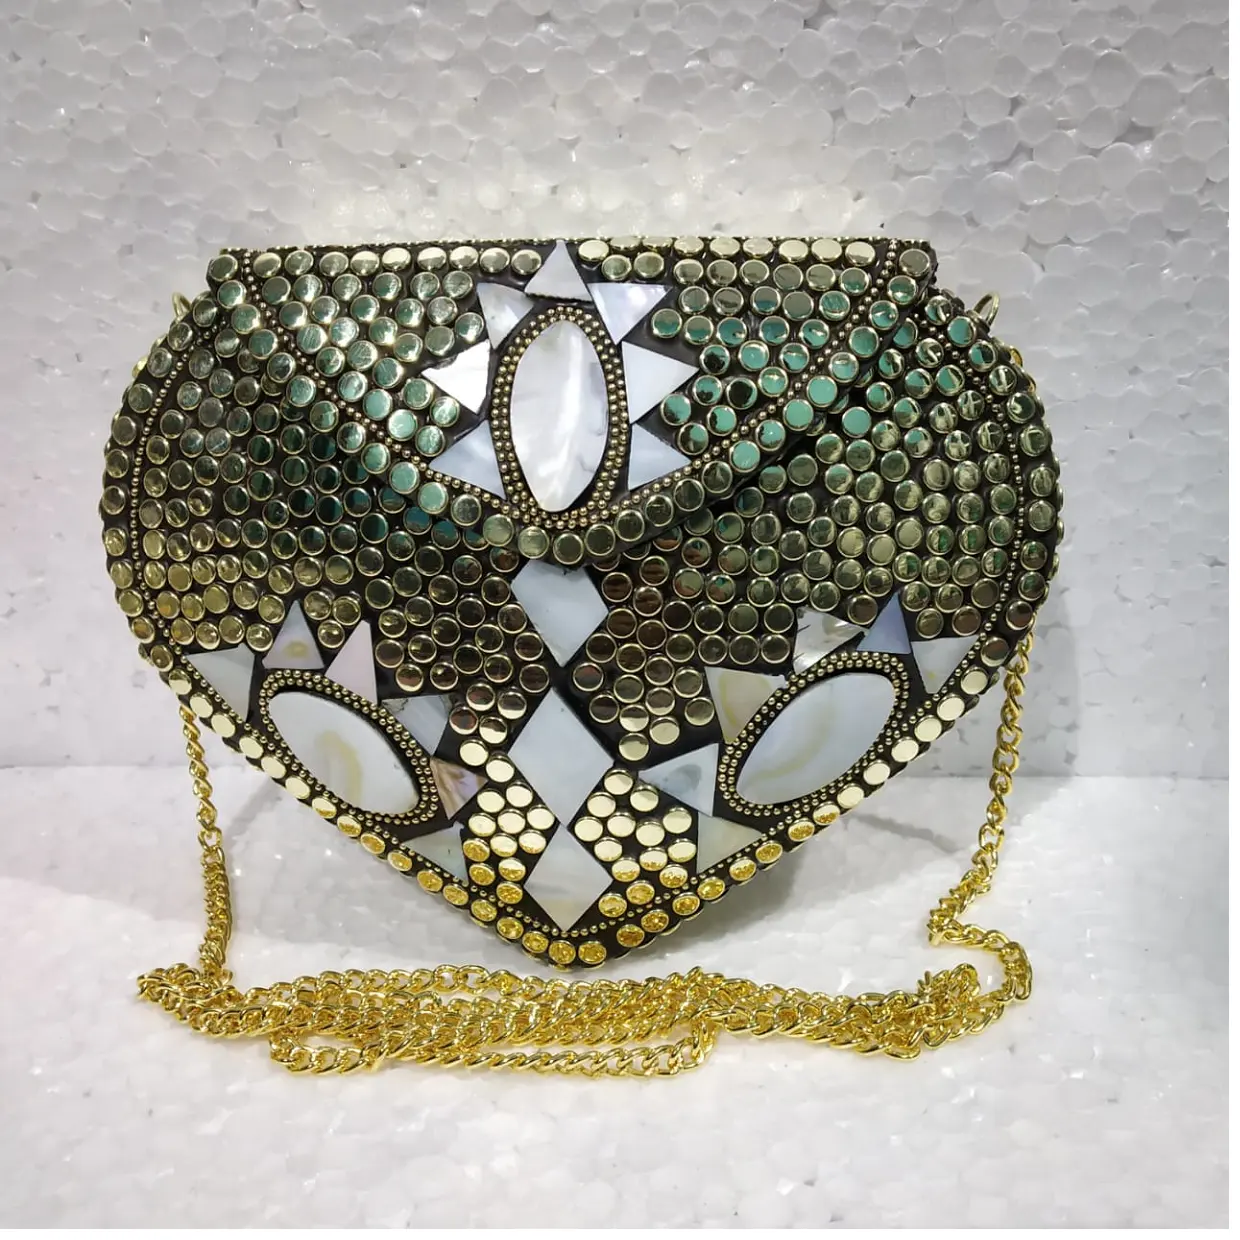 Tas malam tribal mosaik dibuat dengan kancing logam ideal untuk desainer mode dan reseller tas ideal untuk dijual kembali